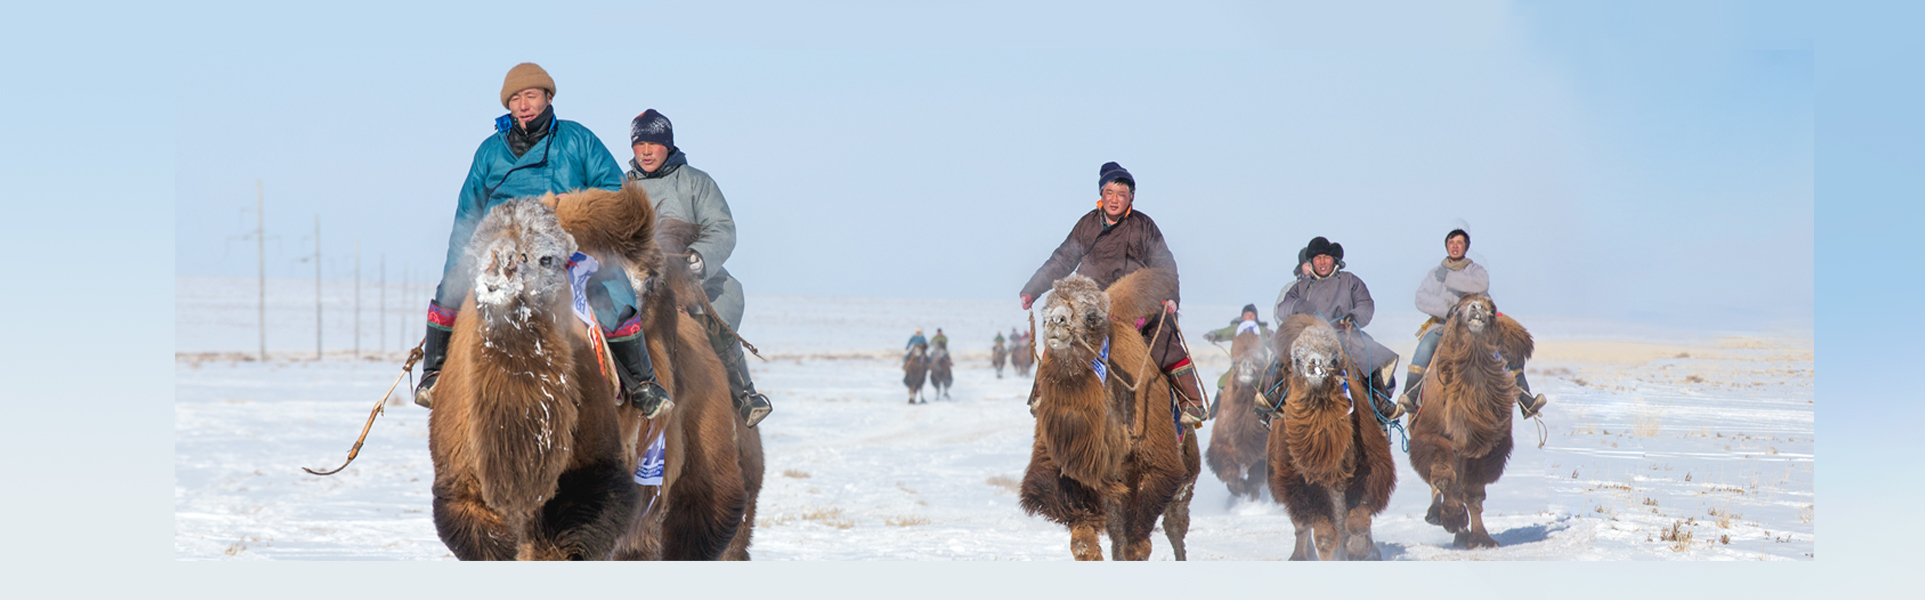 camel_festival_mongolia